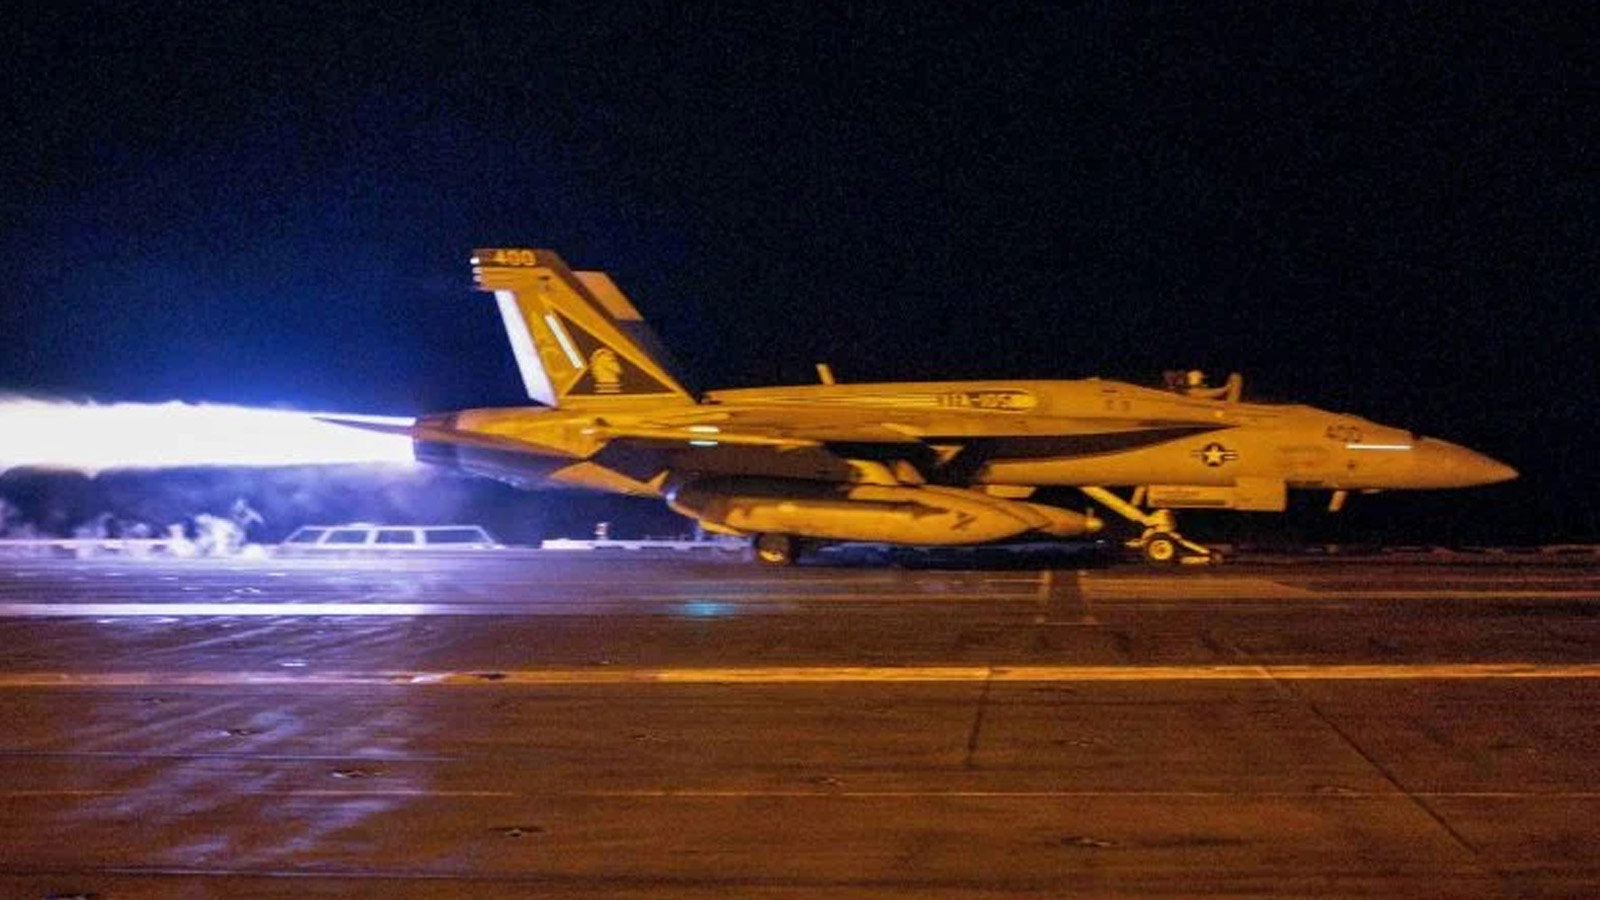  طائرة مقاتلة تقلع من سفينة يو إس إس دوايت دي أيزنهاور (CVN 69) أثناء عمليات الطيران ردًا على هجمات الحوثيين المتزايدة المدعومة من إيران على السفن في البحر الأحمر